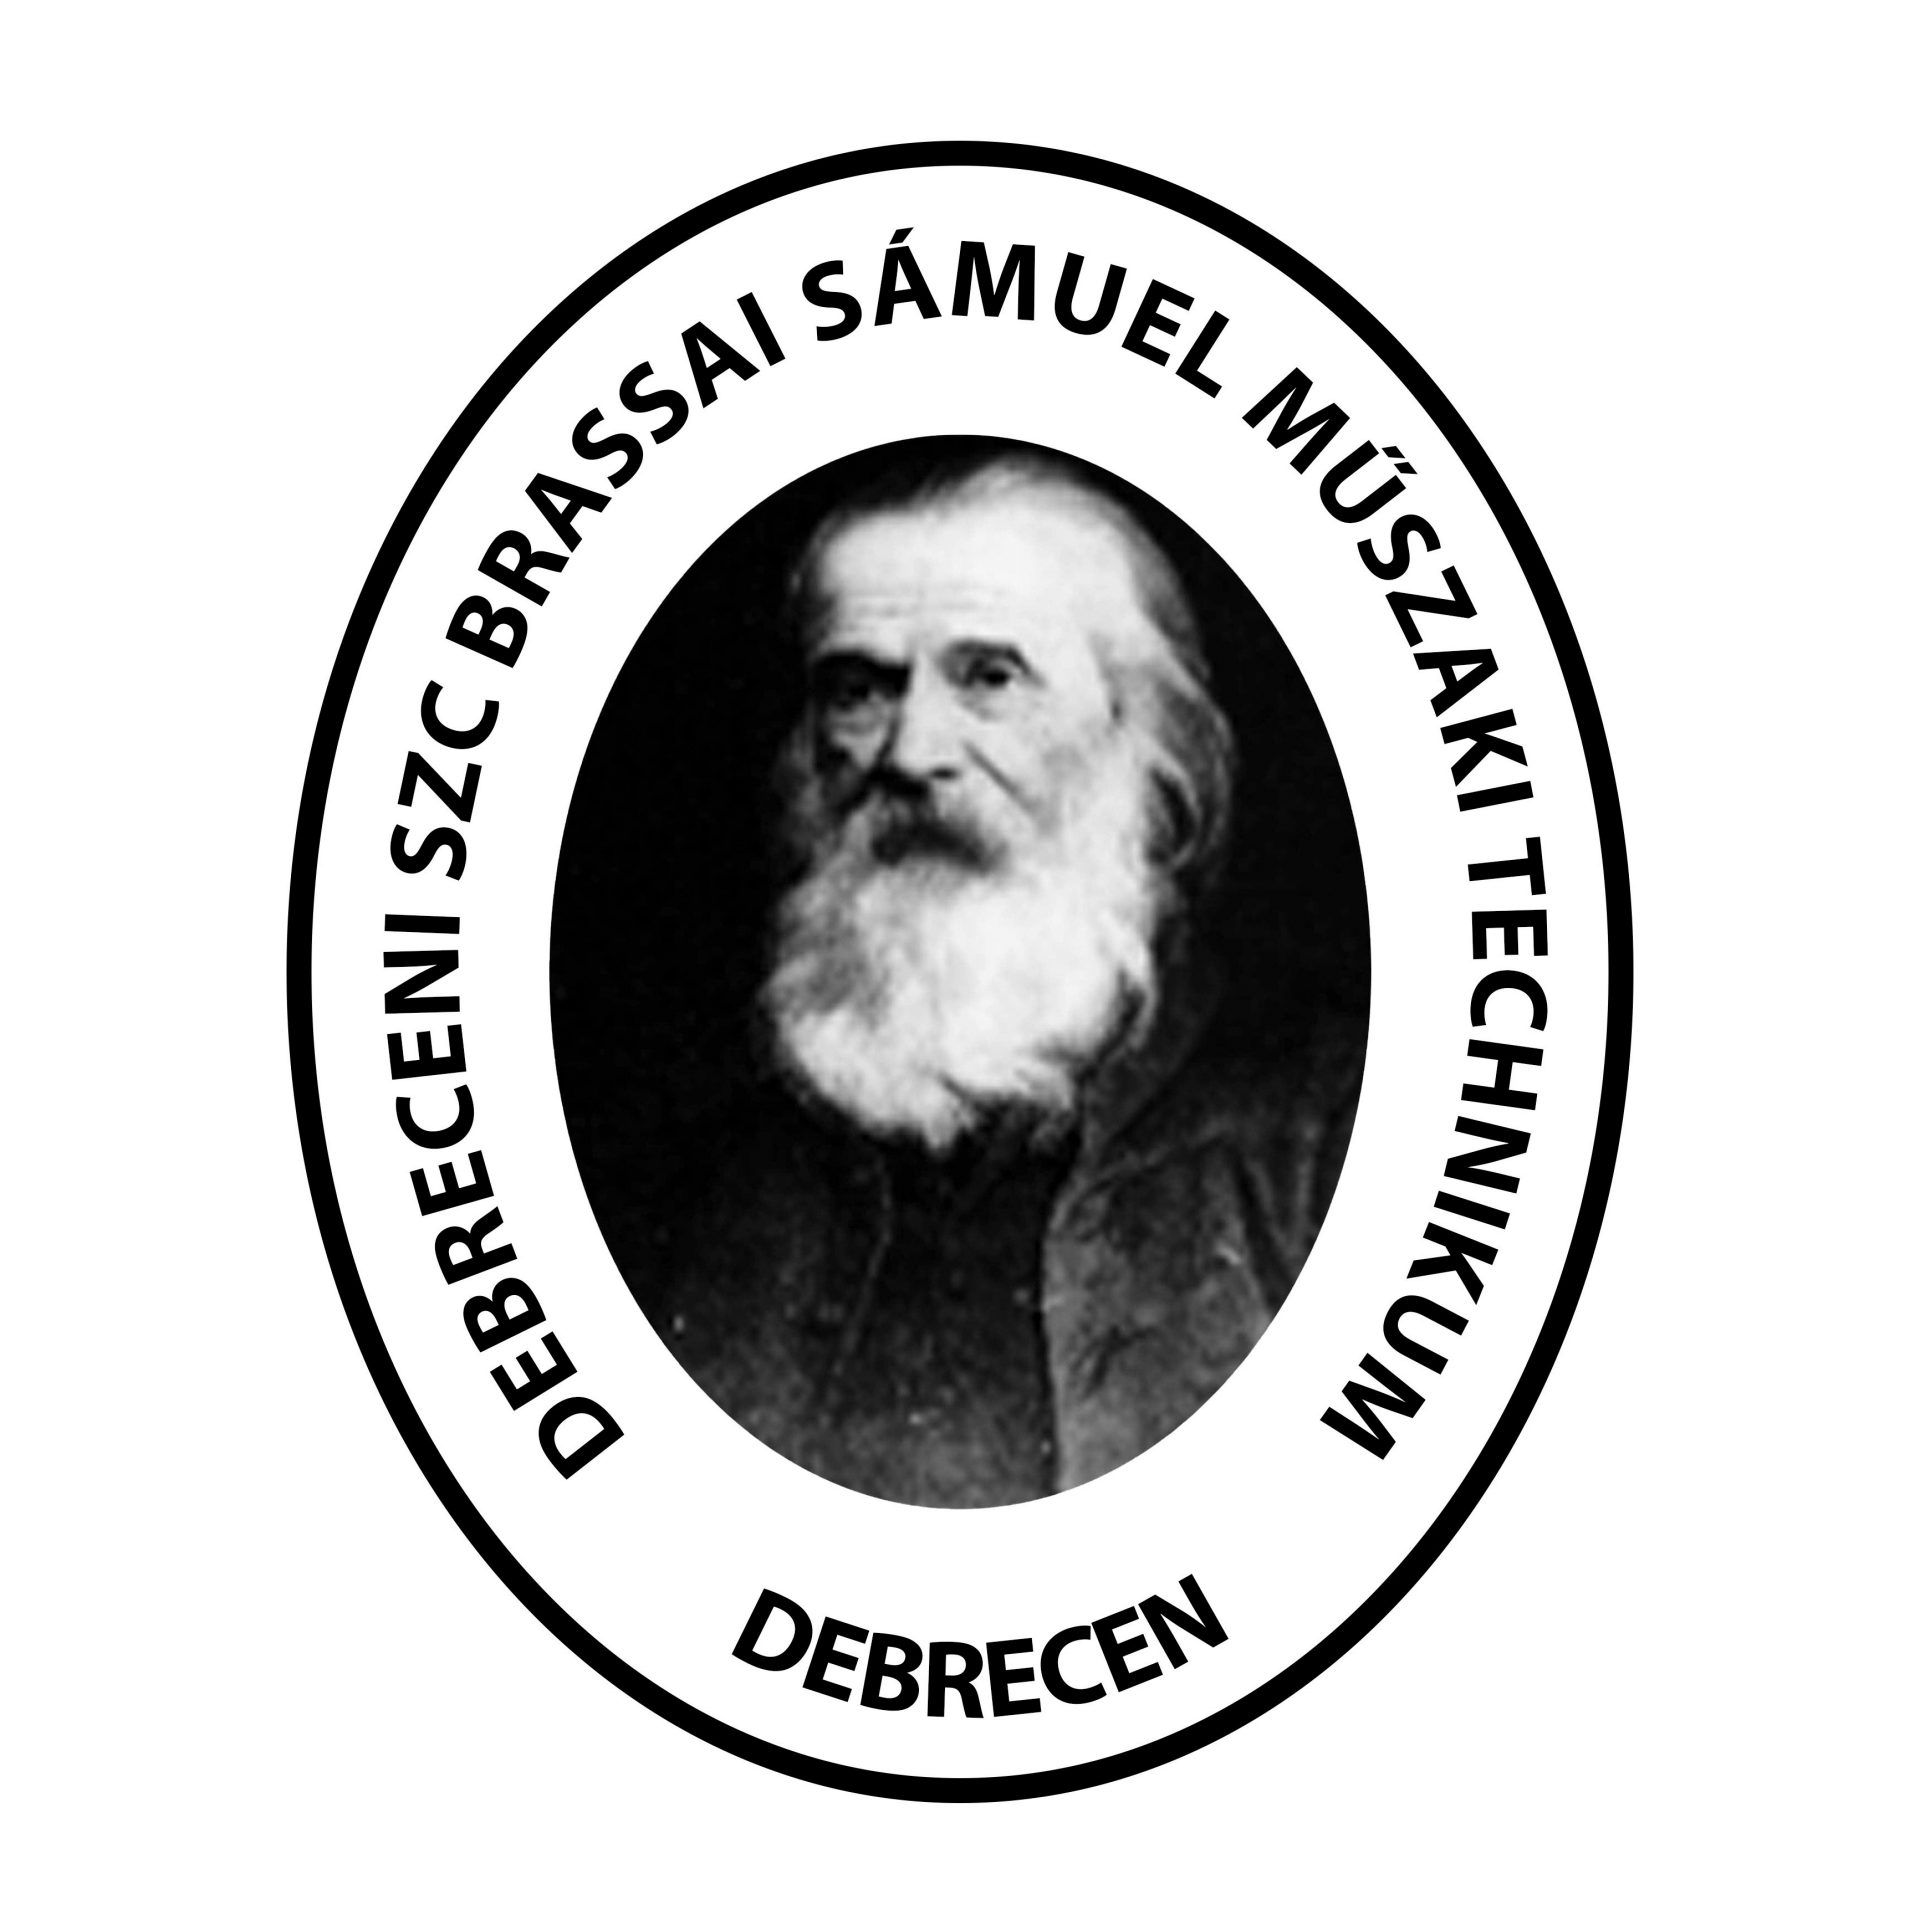 The picture shows the logo of Brassai school Debrecen.